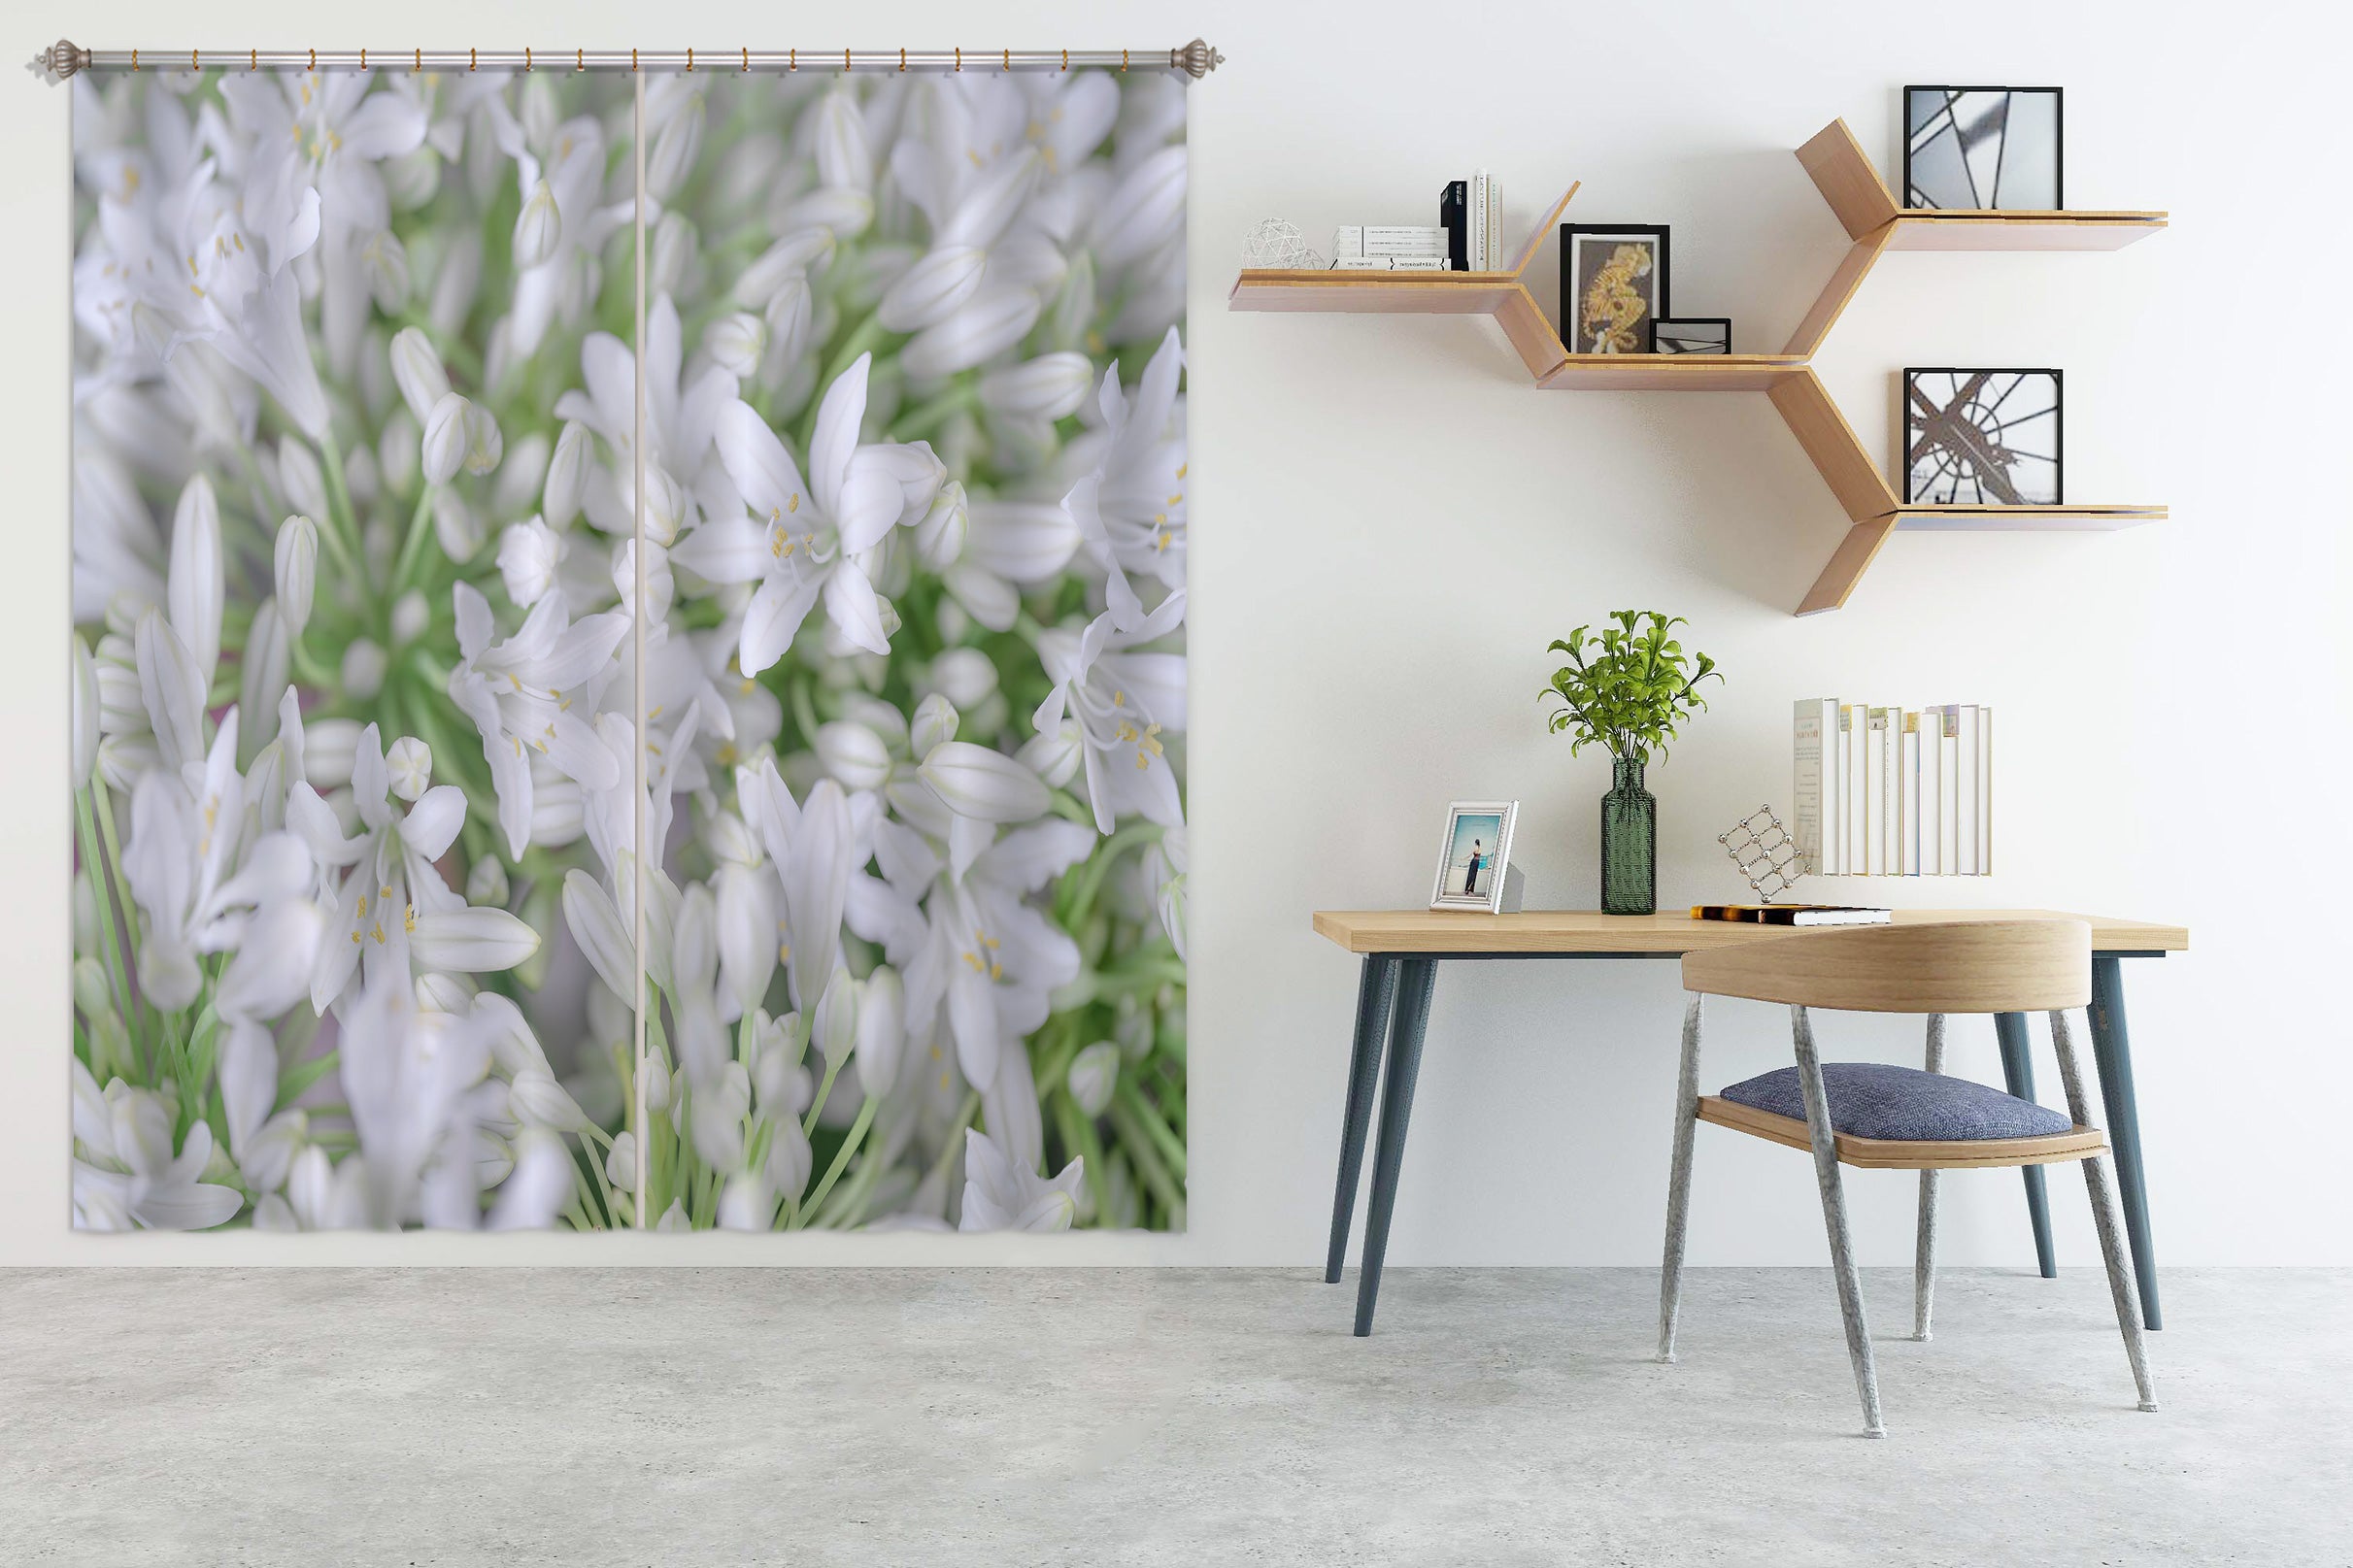 3D White Flower 6568 Assaf Frank Curtain Curtains Drapes